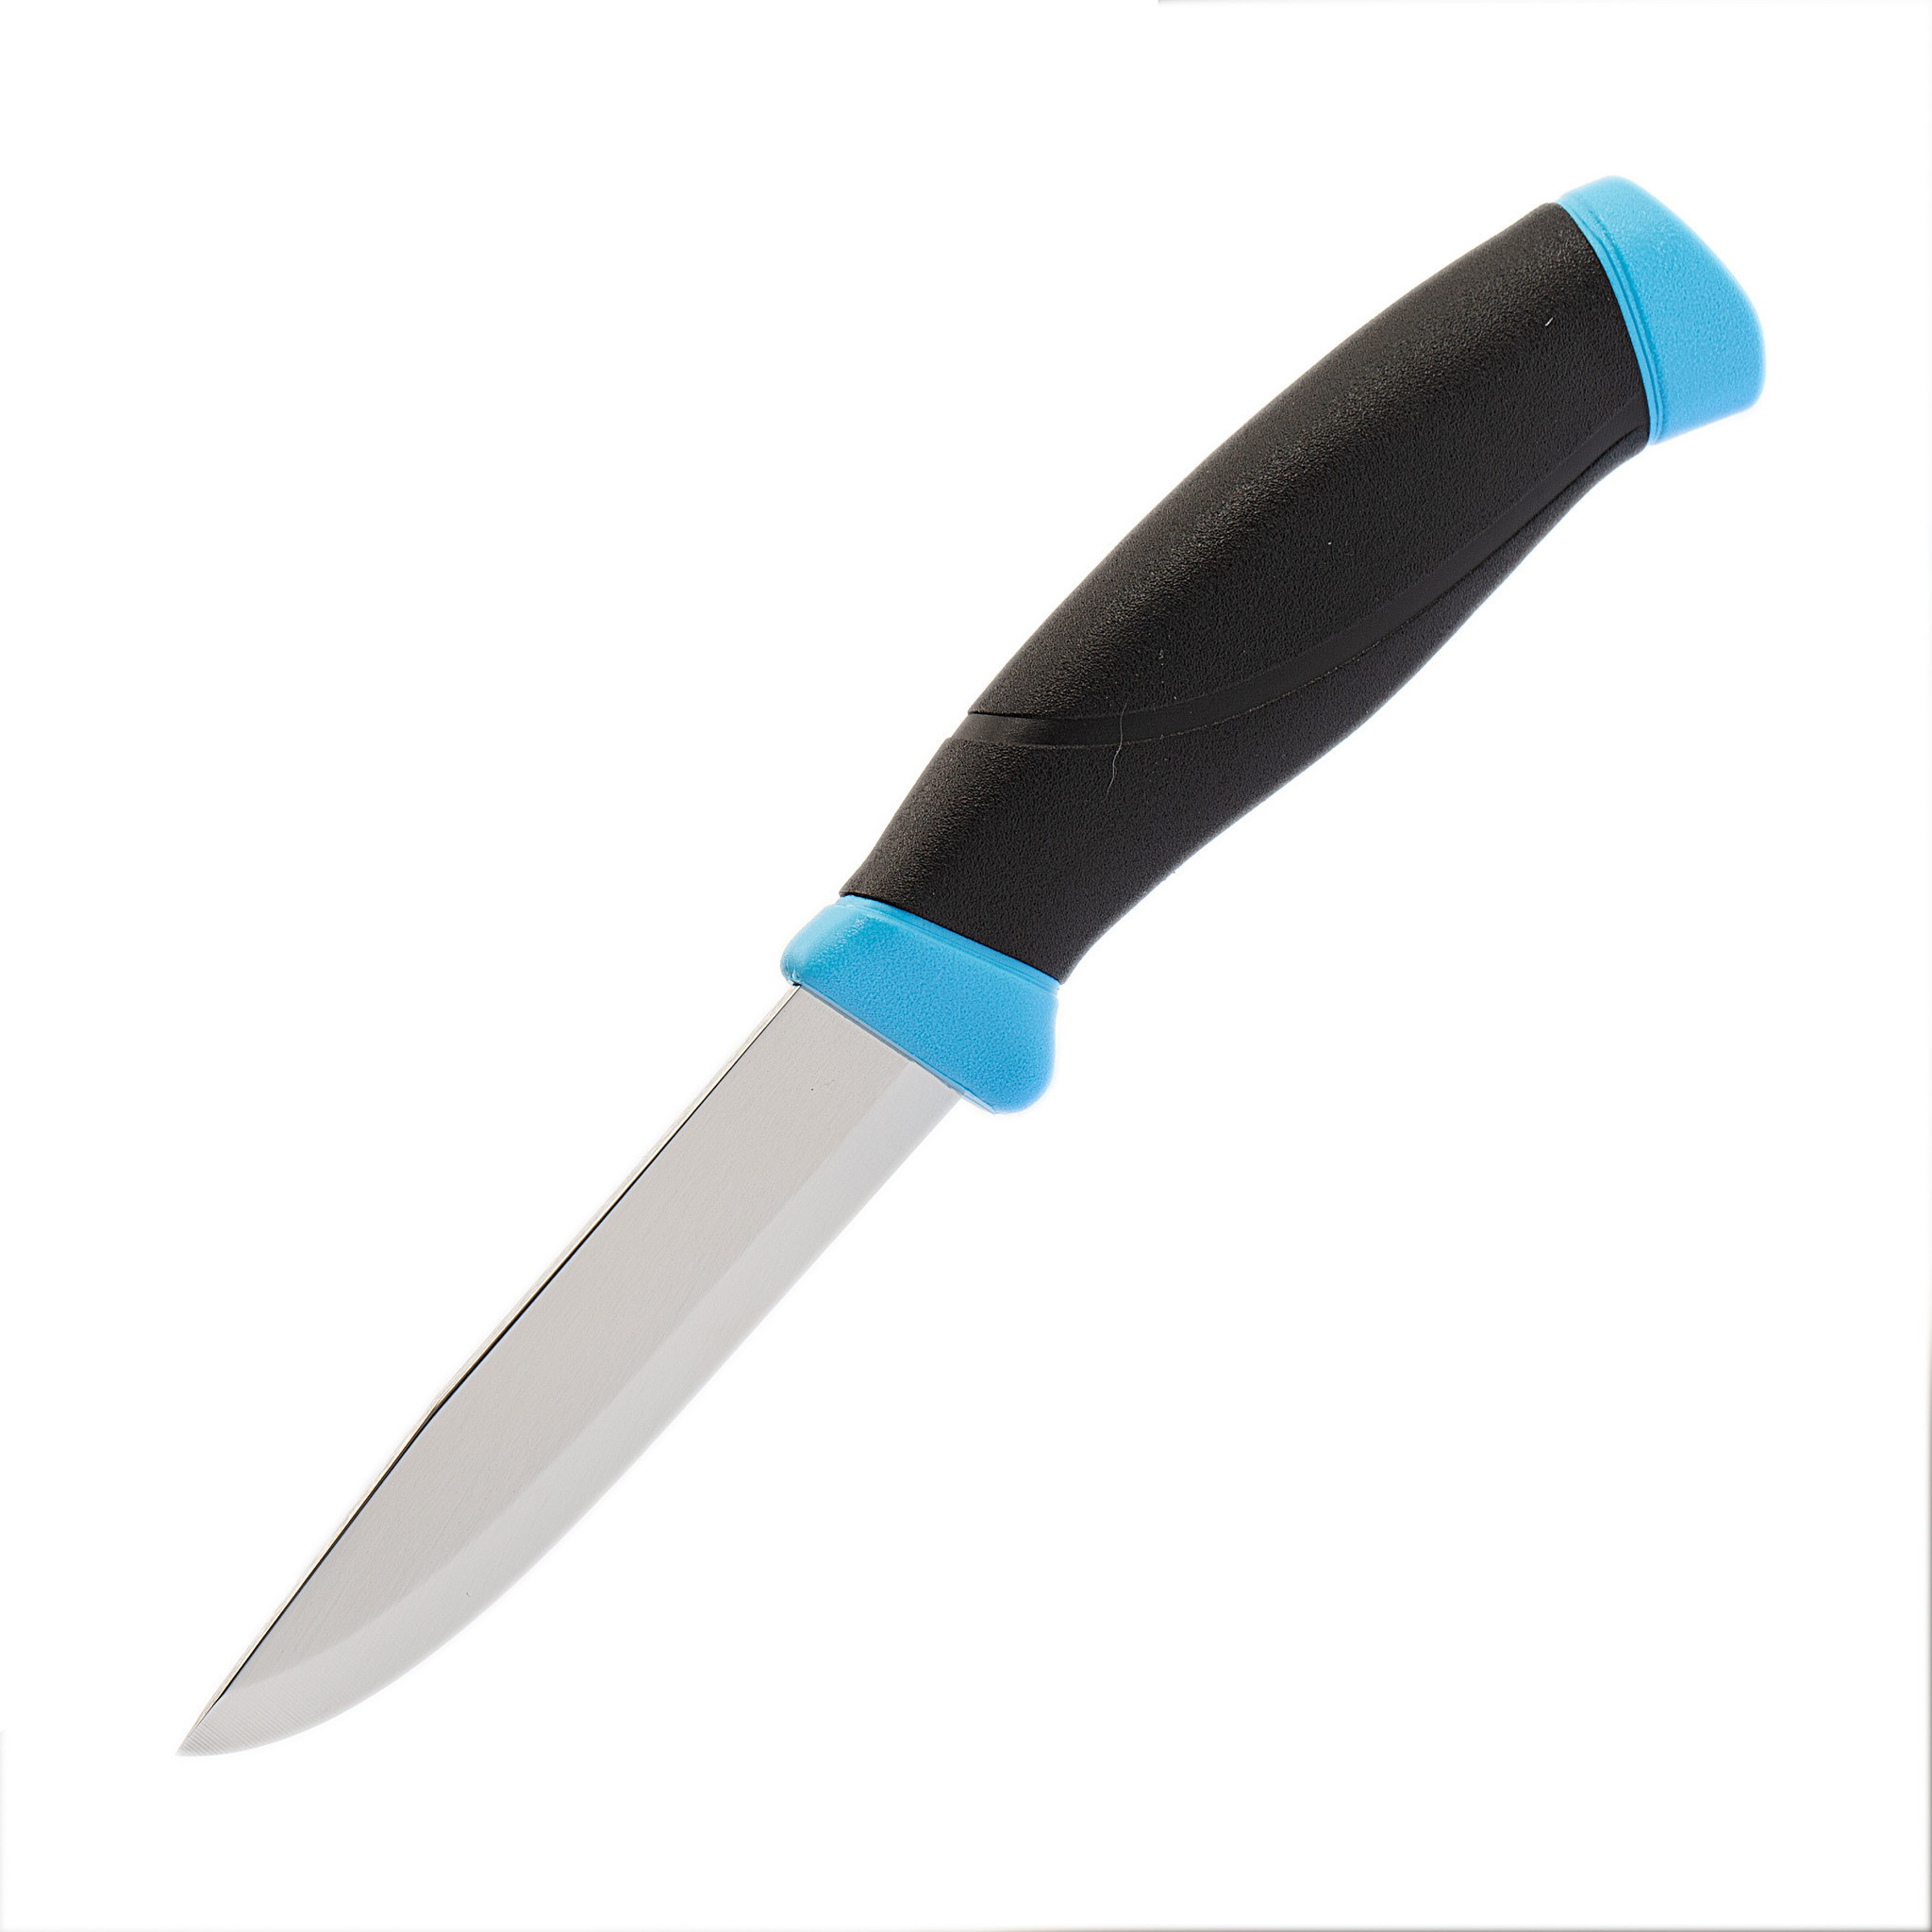 Нож с фиксированным лезвием Morakniv Companion Blue, сталь Sandvik 12С27, рукоять пластик/резина, голубой - фото 1